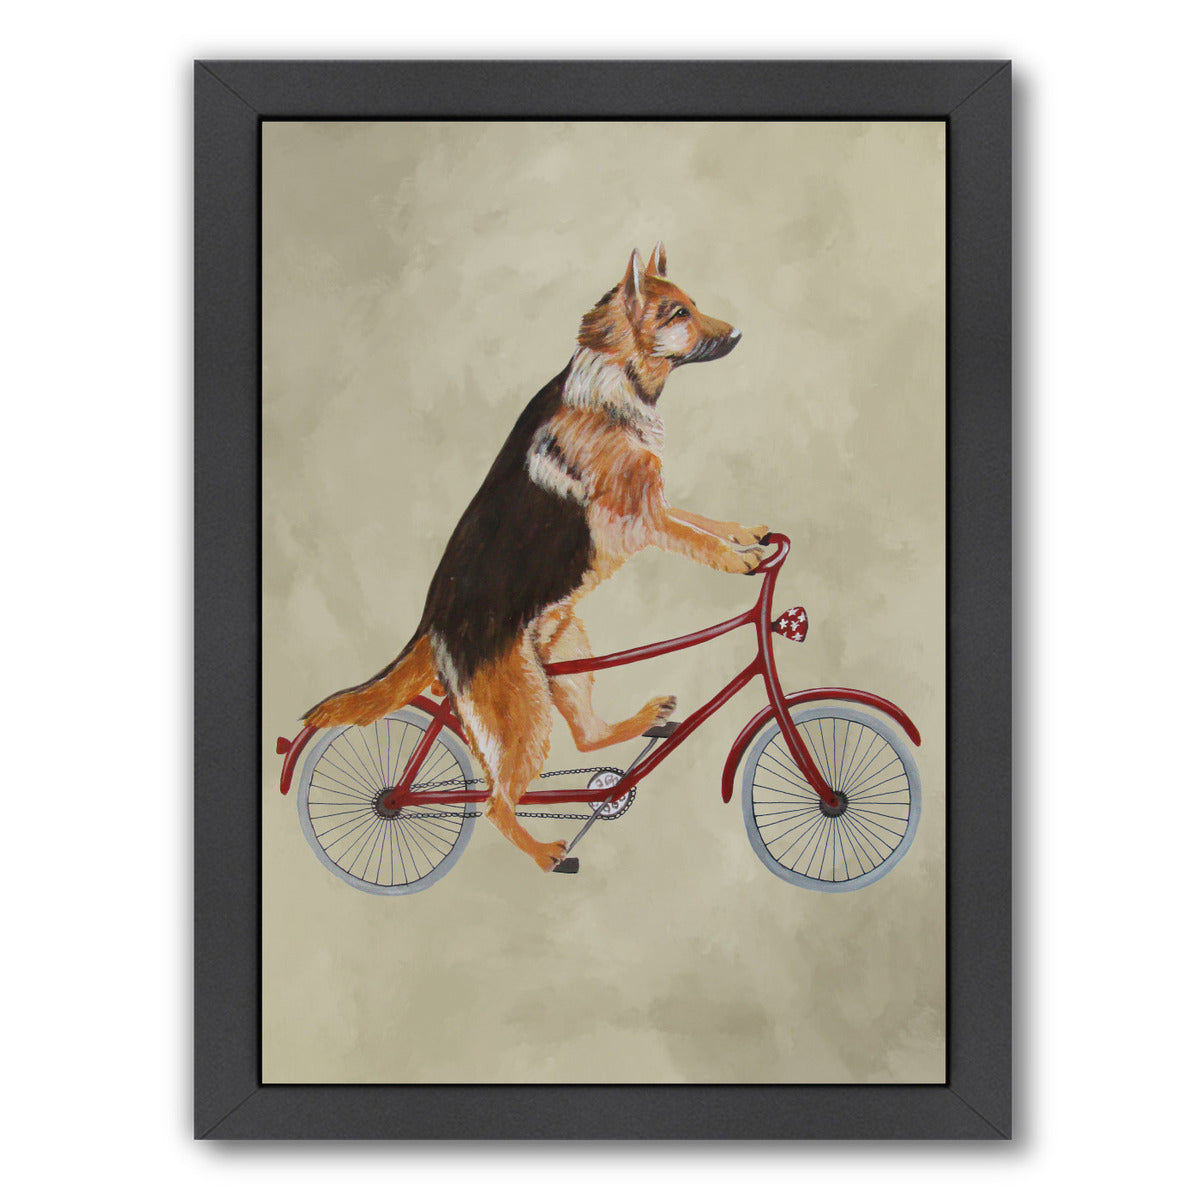 German Shepherd On Bicycle By Coco De Paris - Black Framed Print - Wall Art - Americanflat